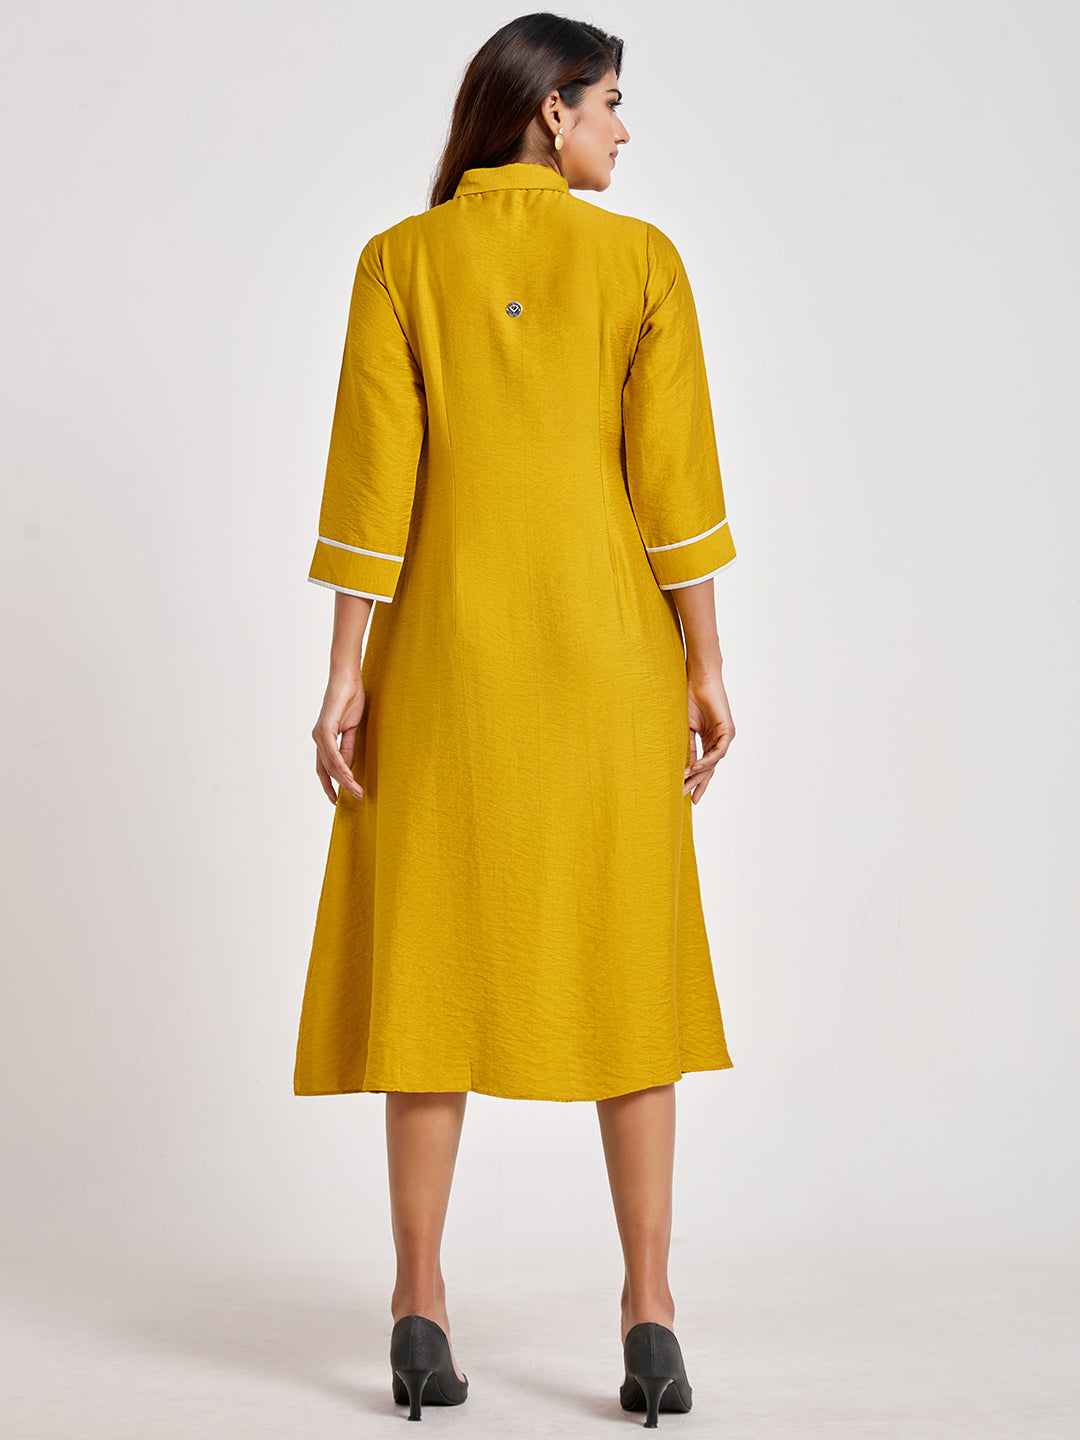 Mustard Shirt Style A-Line Dress - ARH1138